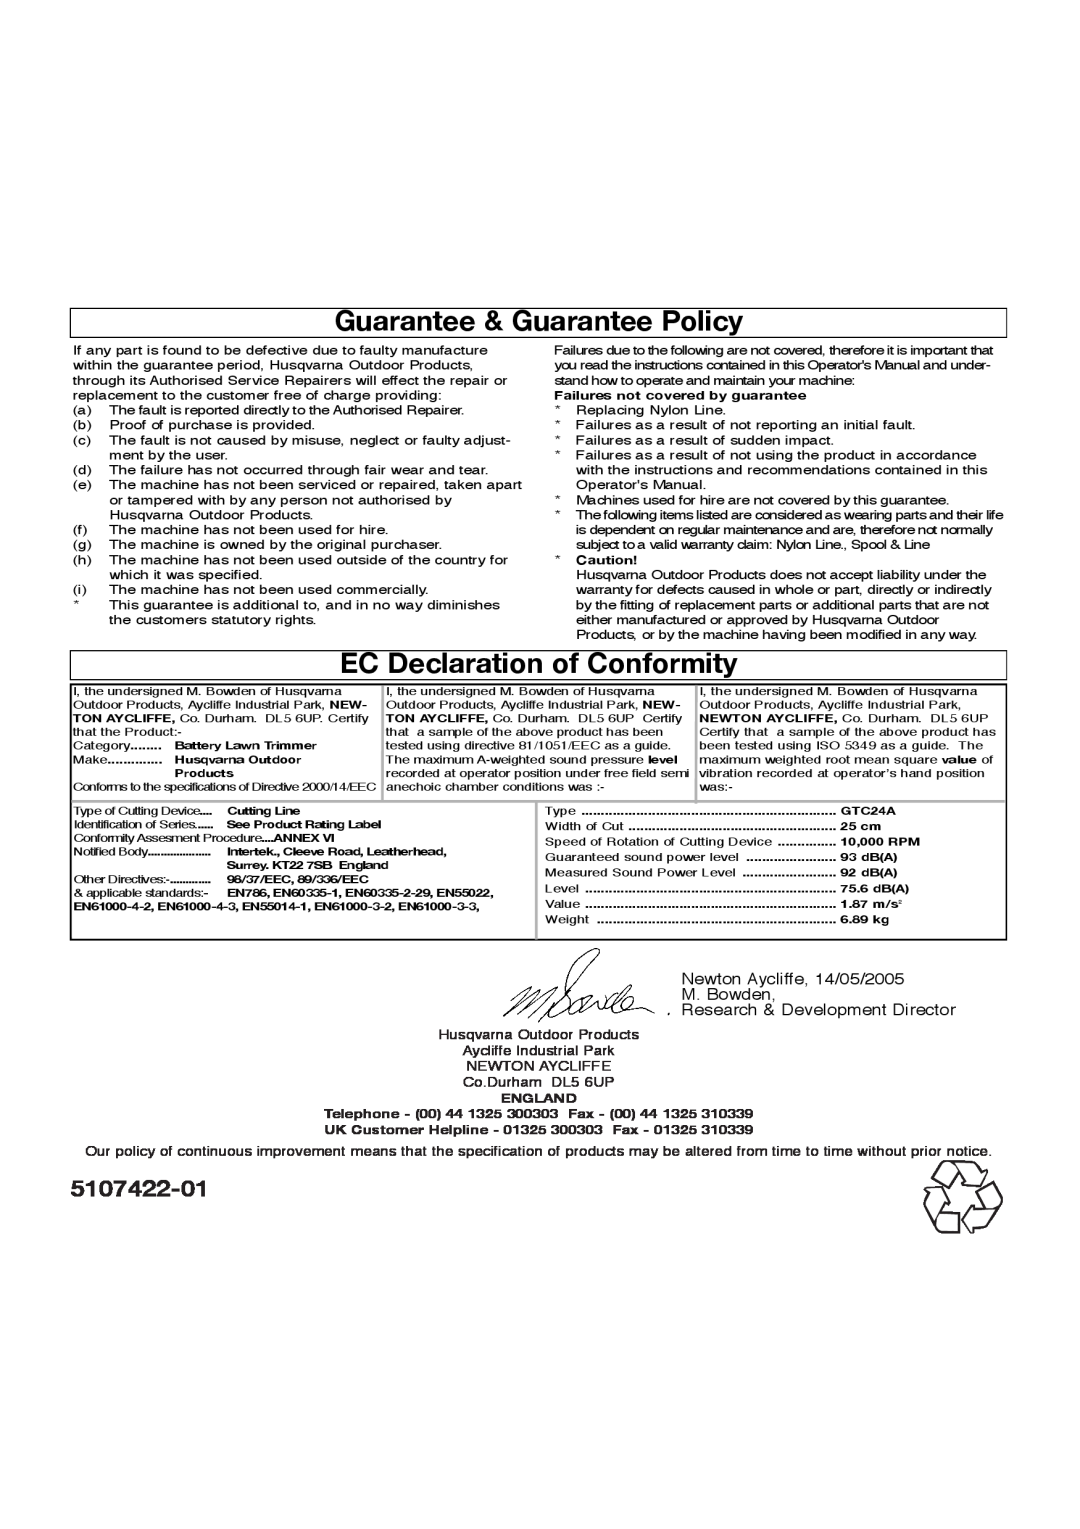 Flymo Sabre Trim manual Guarantee & Guarantee Policy, EC Declaration of Conformity, 5107422-01, Co.Durham DL5 6UP 